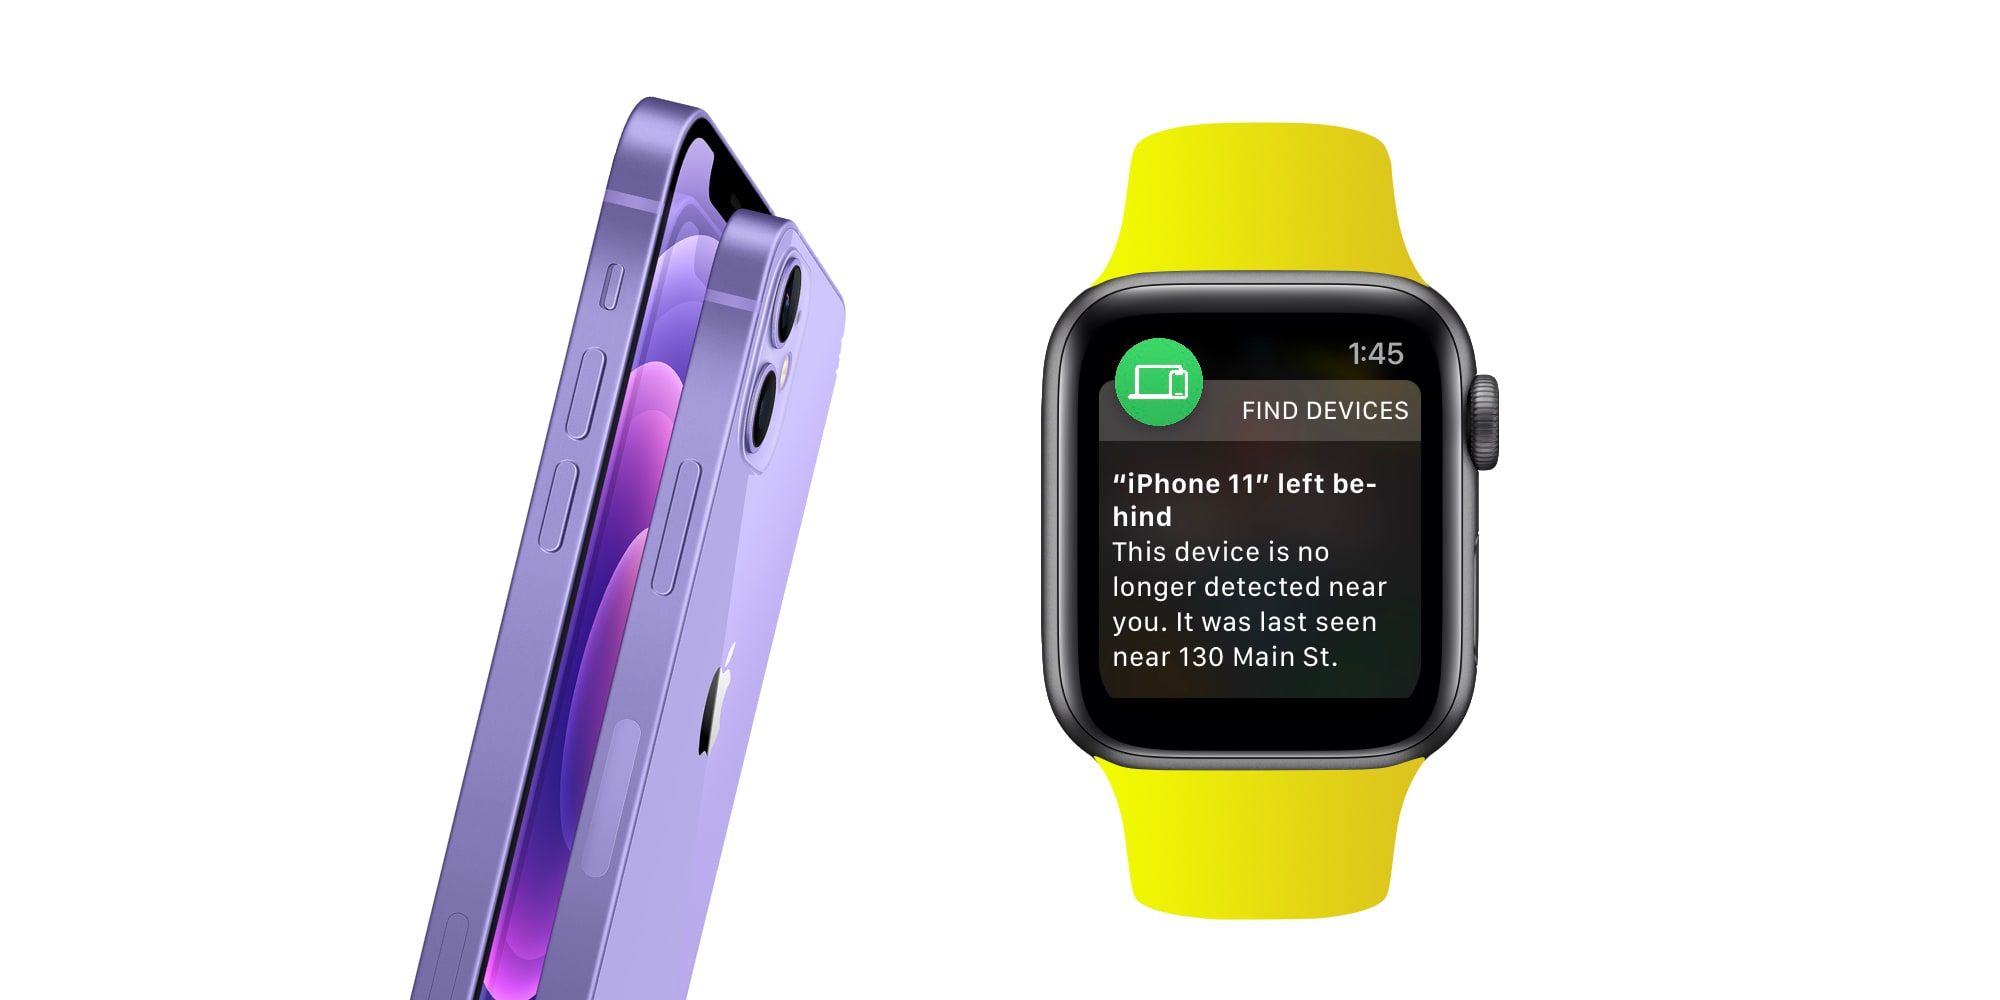 Apple Watch Notifications Alert iPhone Left Behind